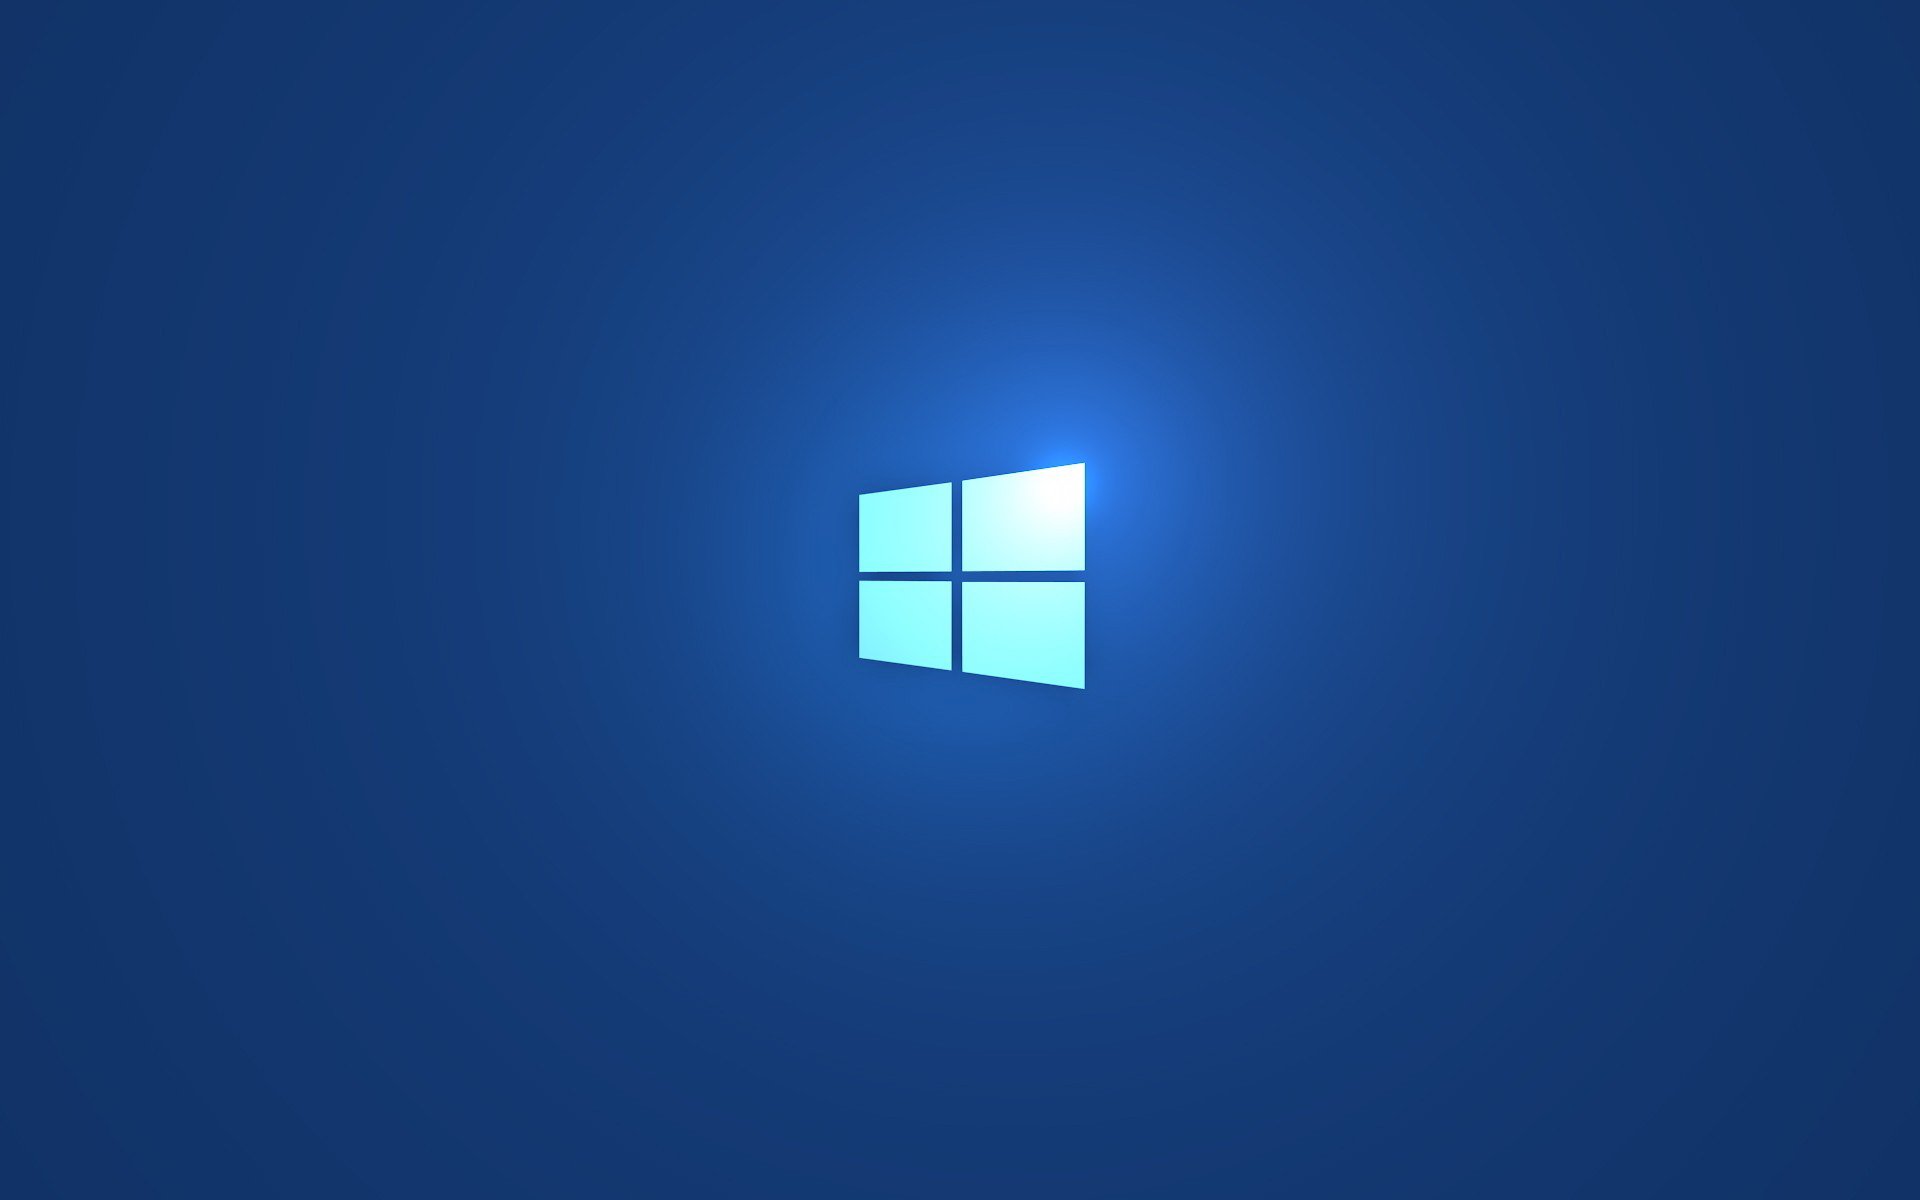 fond d'écran windows 8.1,bleu,bleu cobalt,jour,bleu électrique,police de caractère